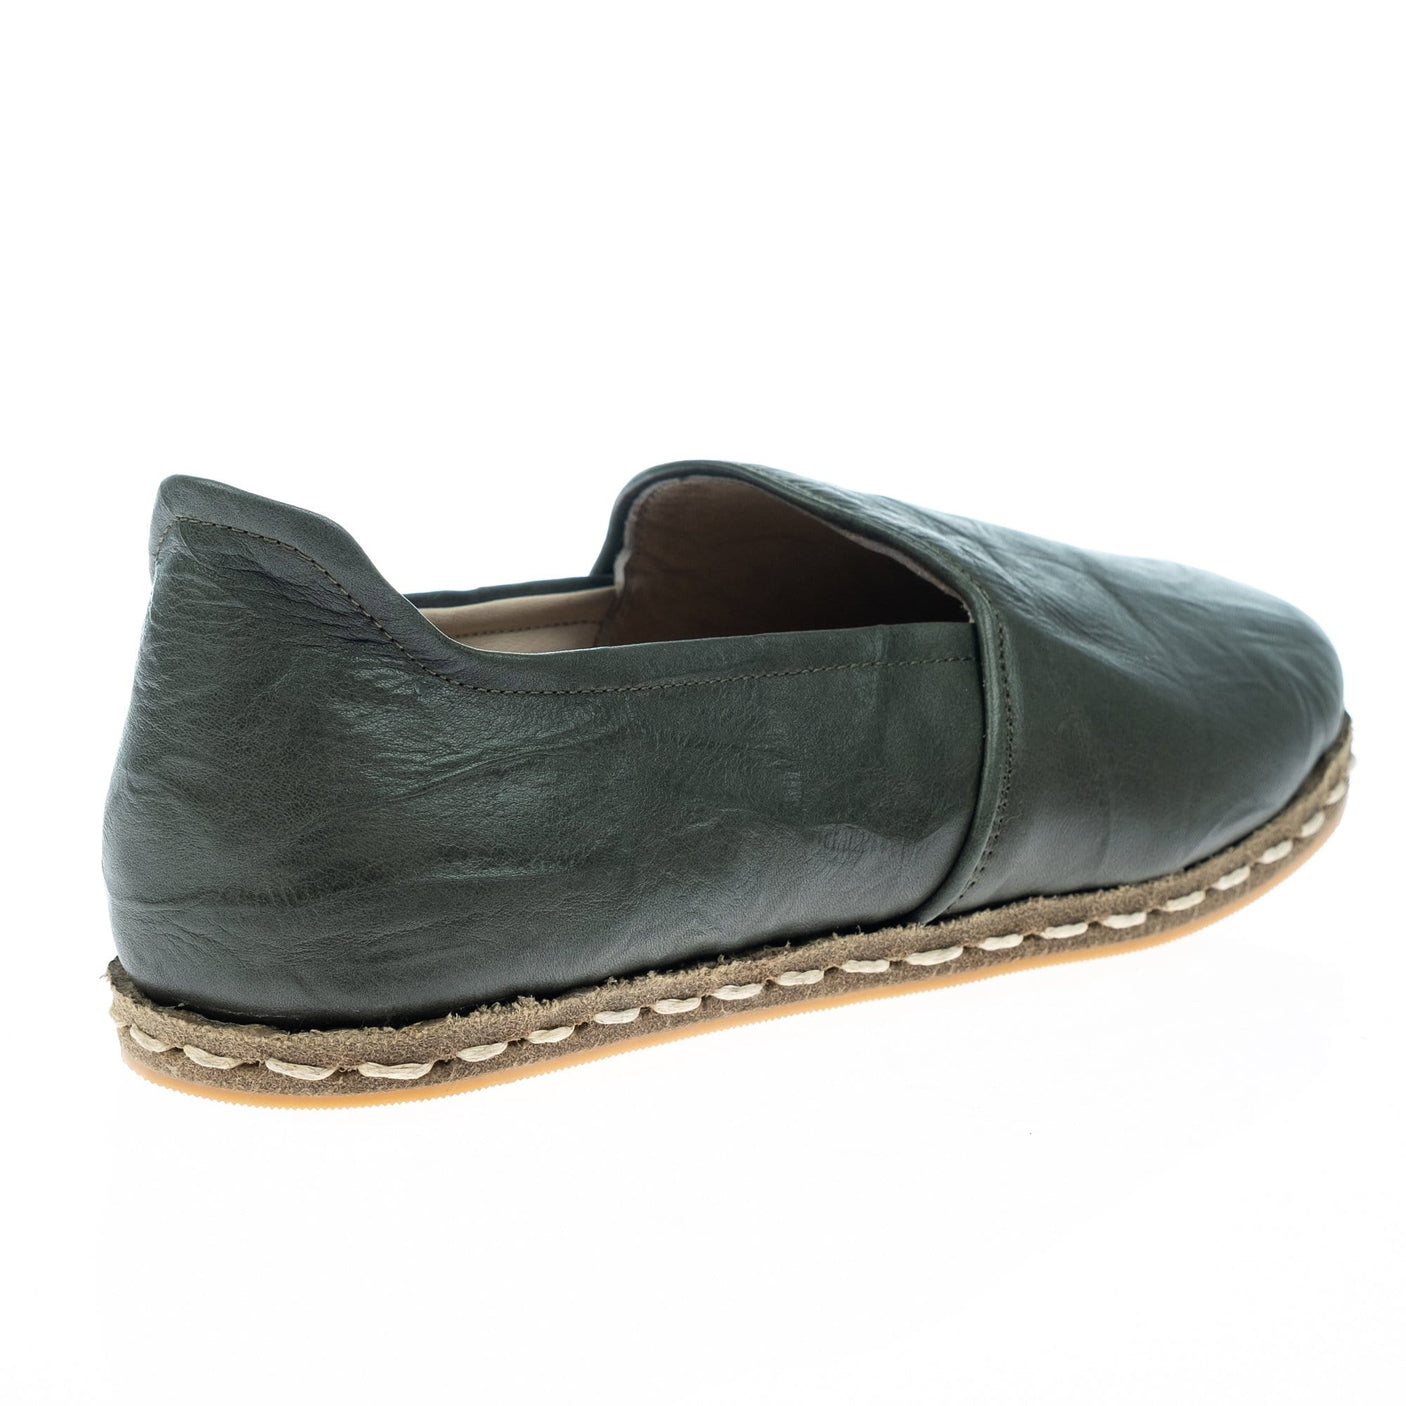 Men's Wrinkled Green Slip On Shoes